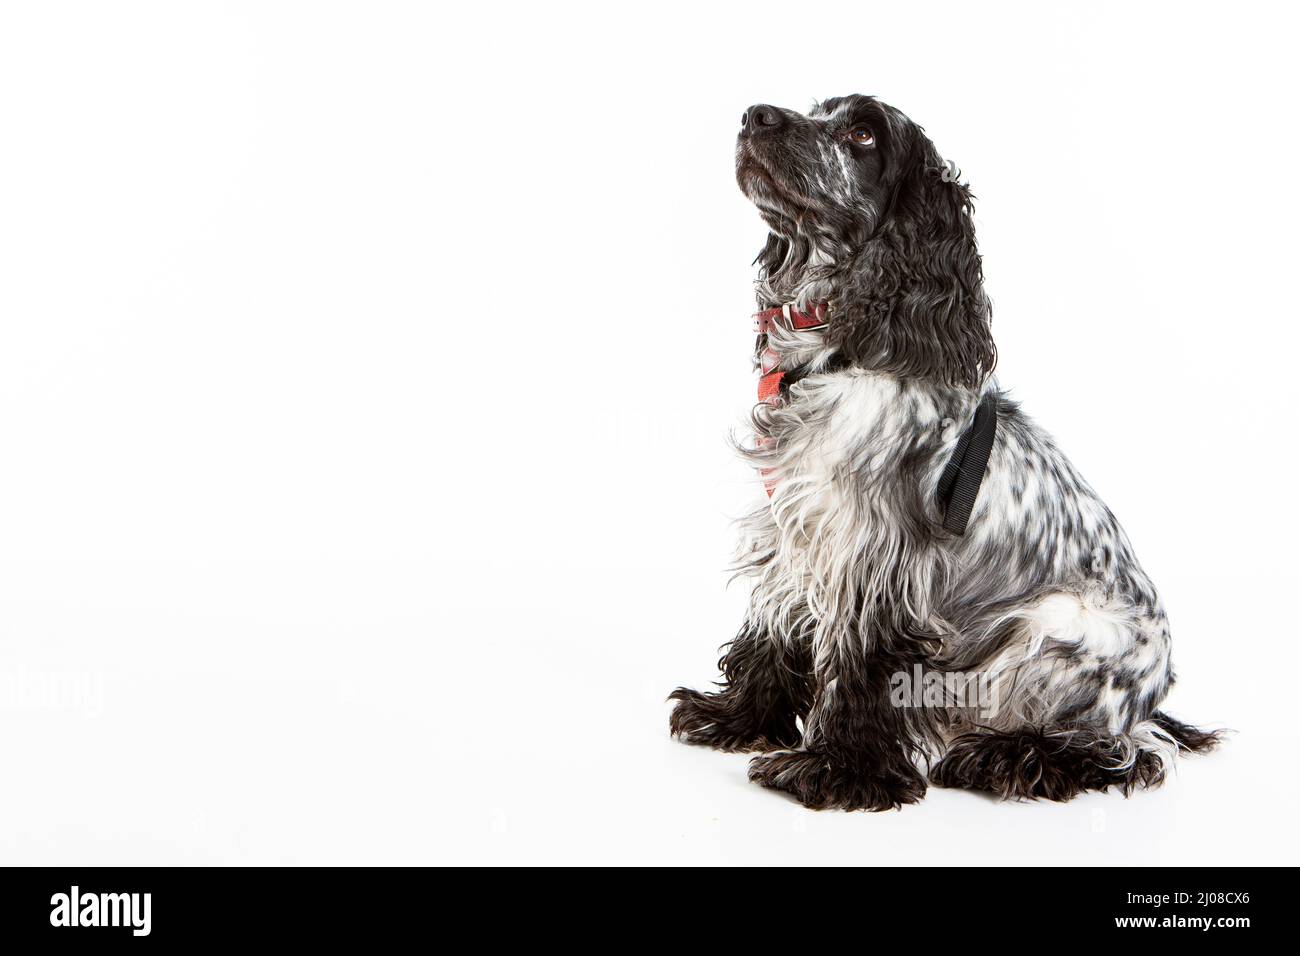 Inglese Springer Spaniel. Immagine studio corpo intero di un cane inglese Springer Spaniel pedigree posto su sfondo bianco. Foto Stock